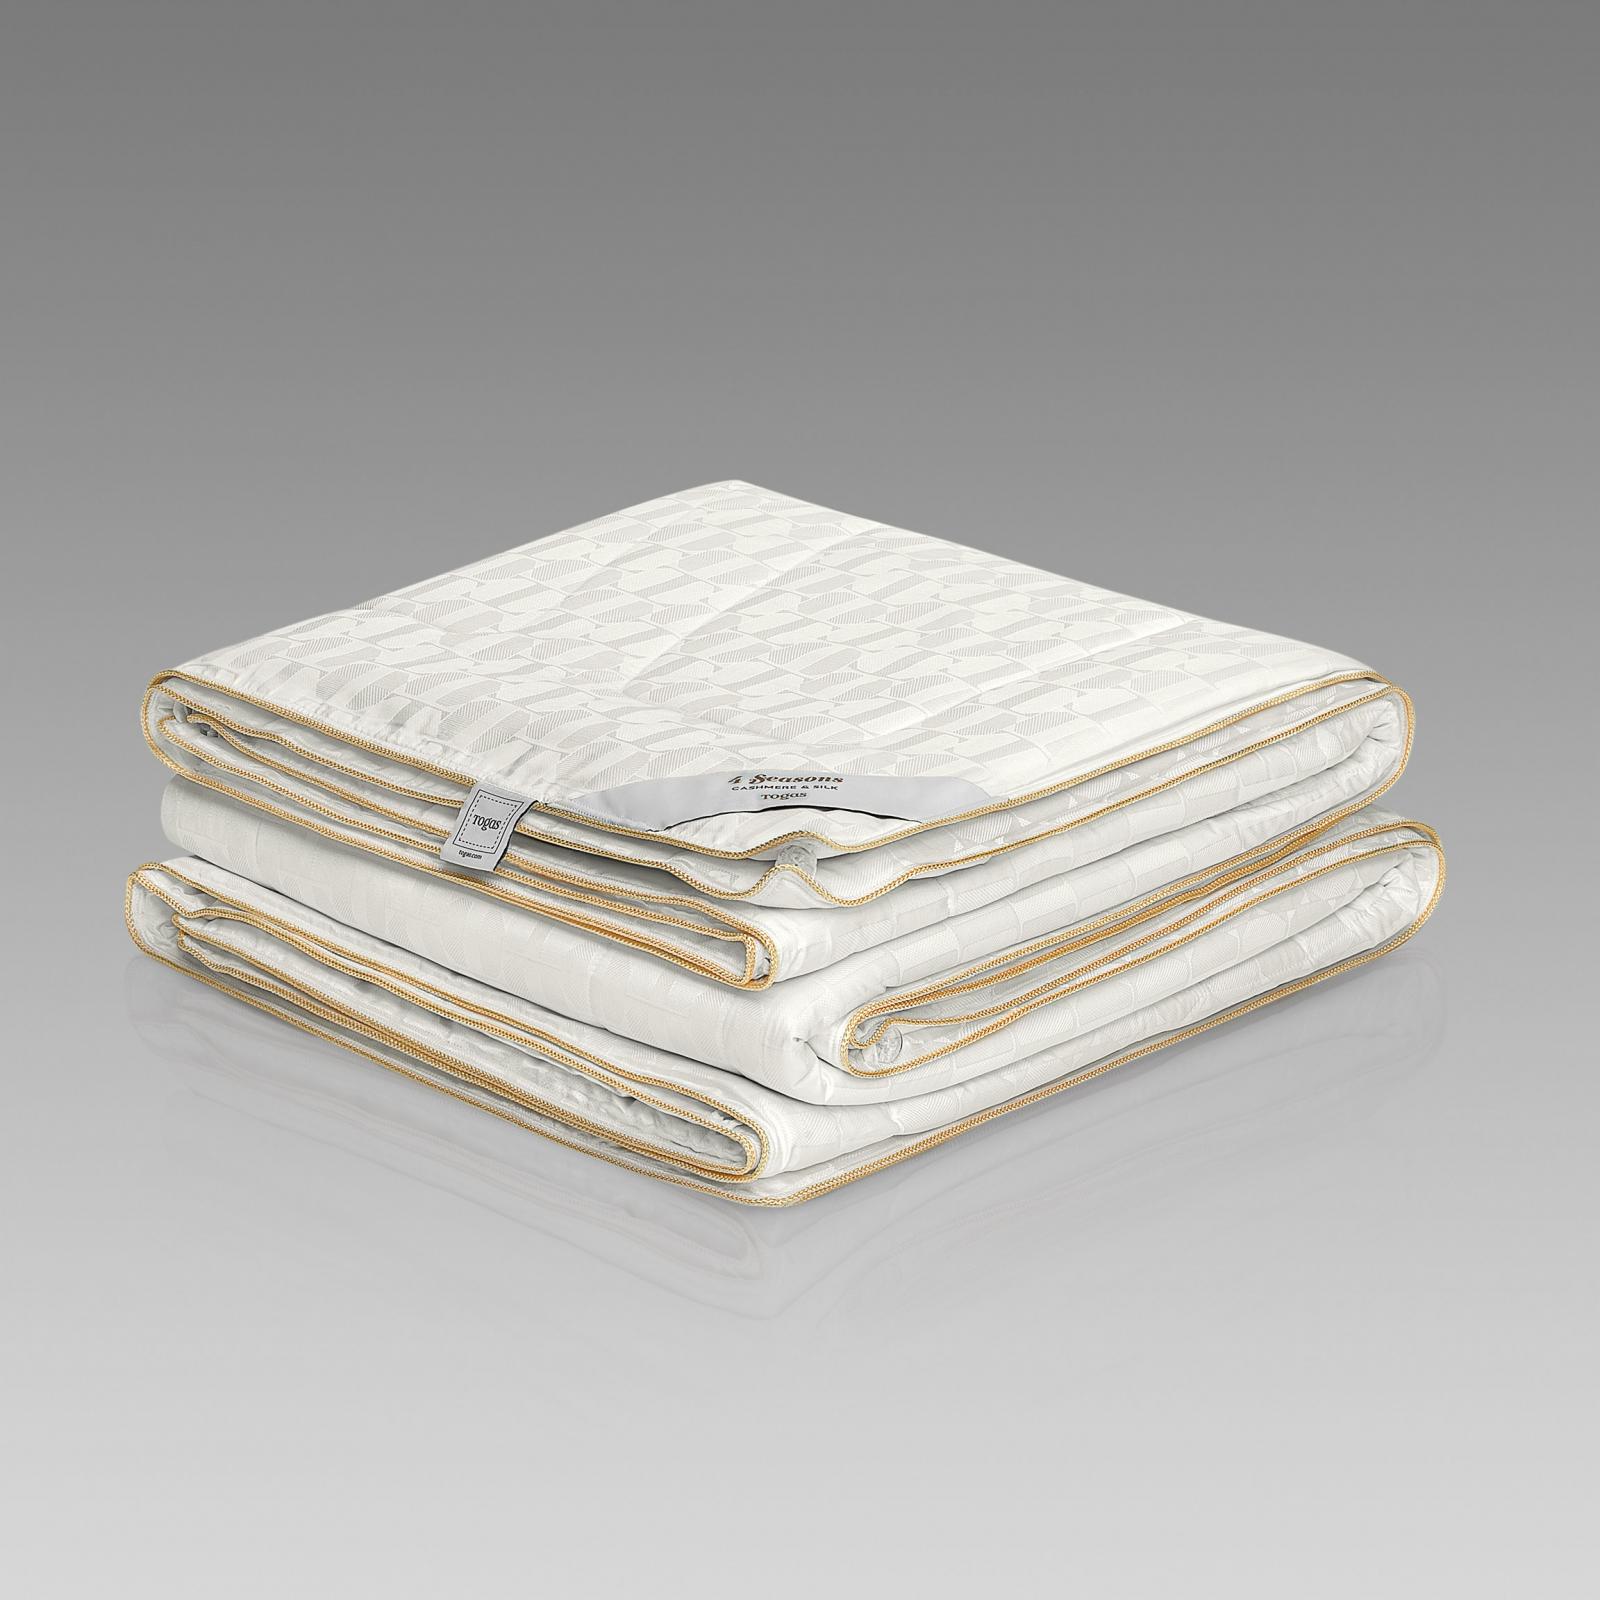 Одеяло Togas 4 сезона белое 140х200 см (20.04.40.0000) одеяло marc anri rouffach белое 140х200 см ma ec